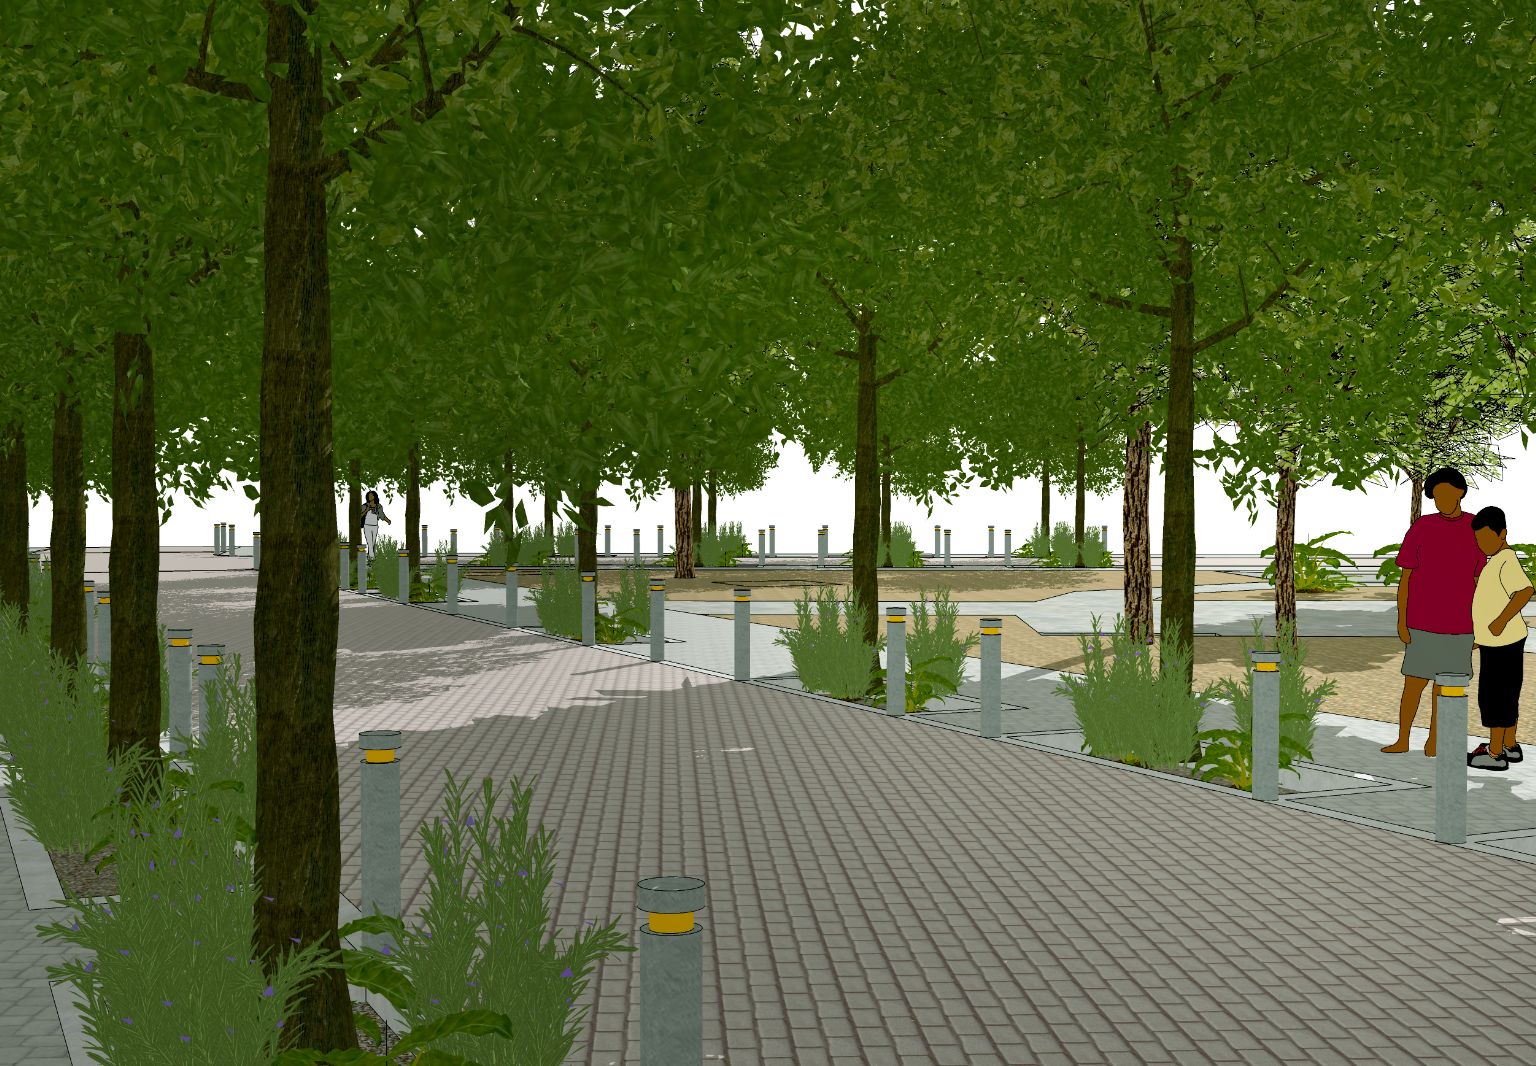 Grafik: Vision eines offenen Platzes mit vielen Bäumen. Zwei Menschen stehen im Schatten.